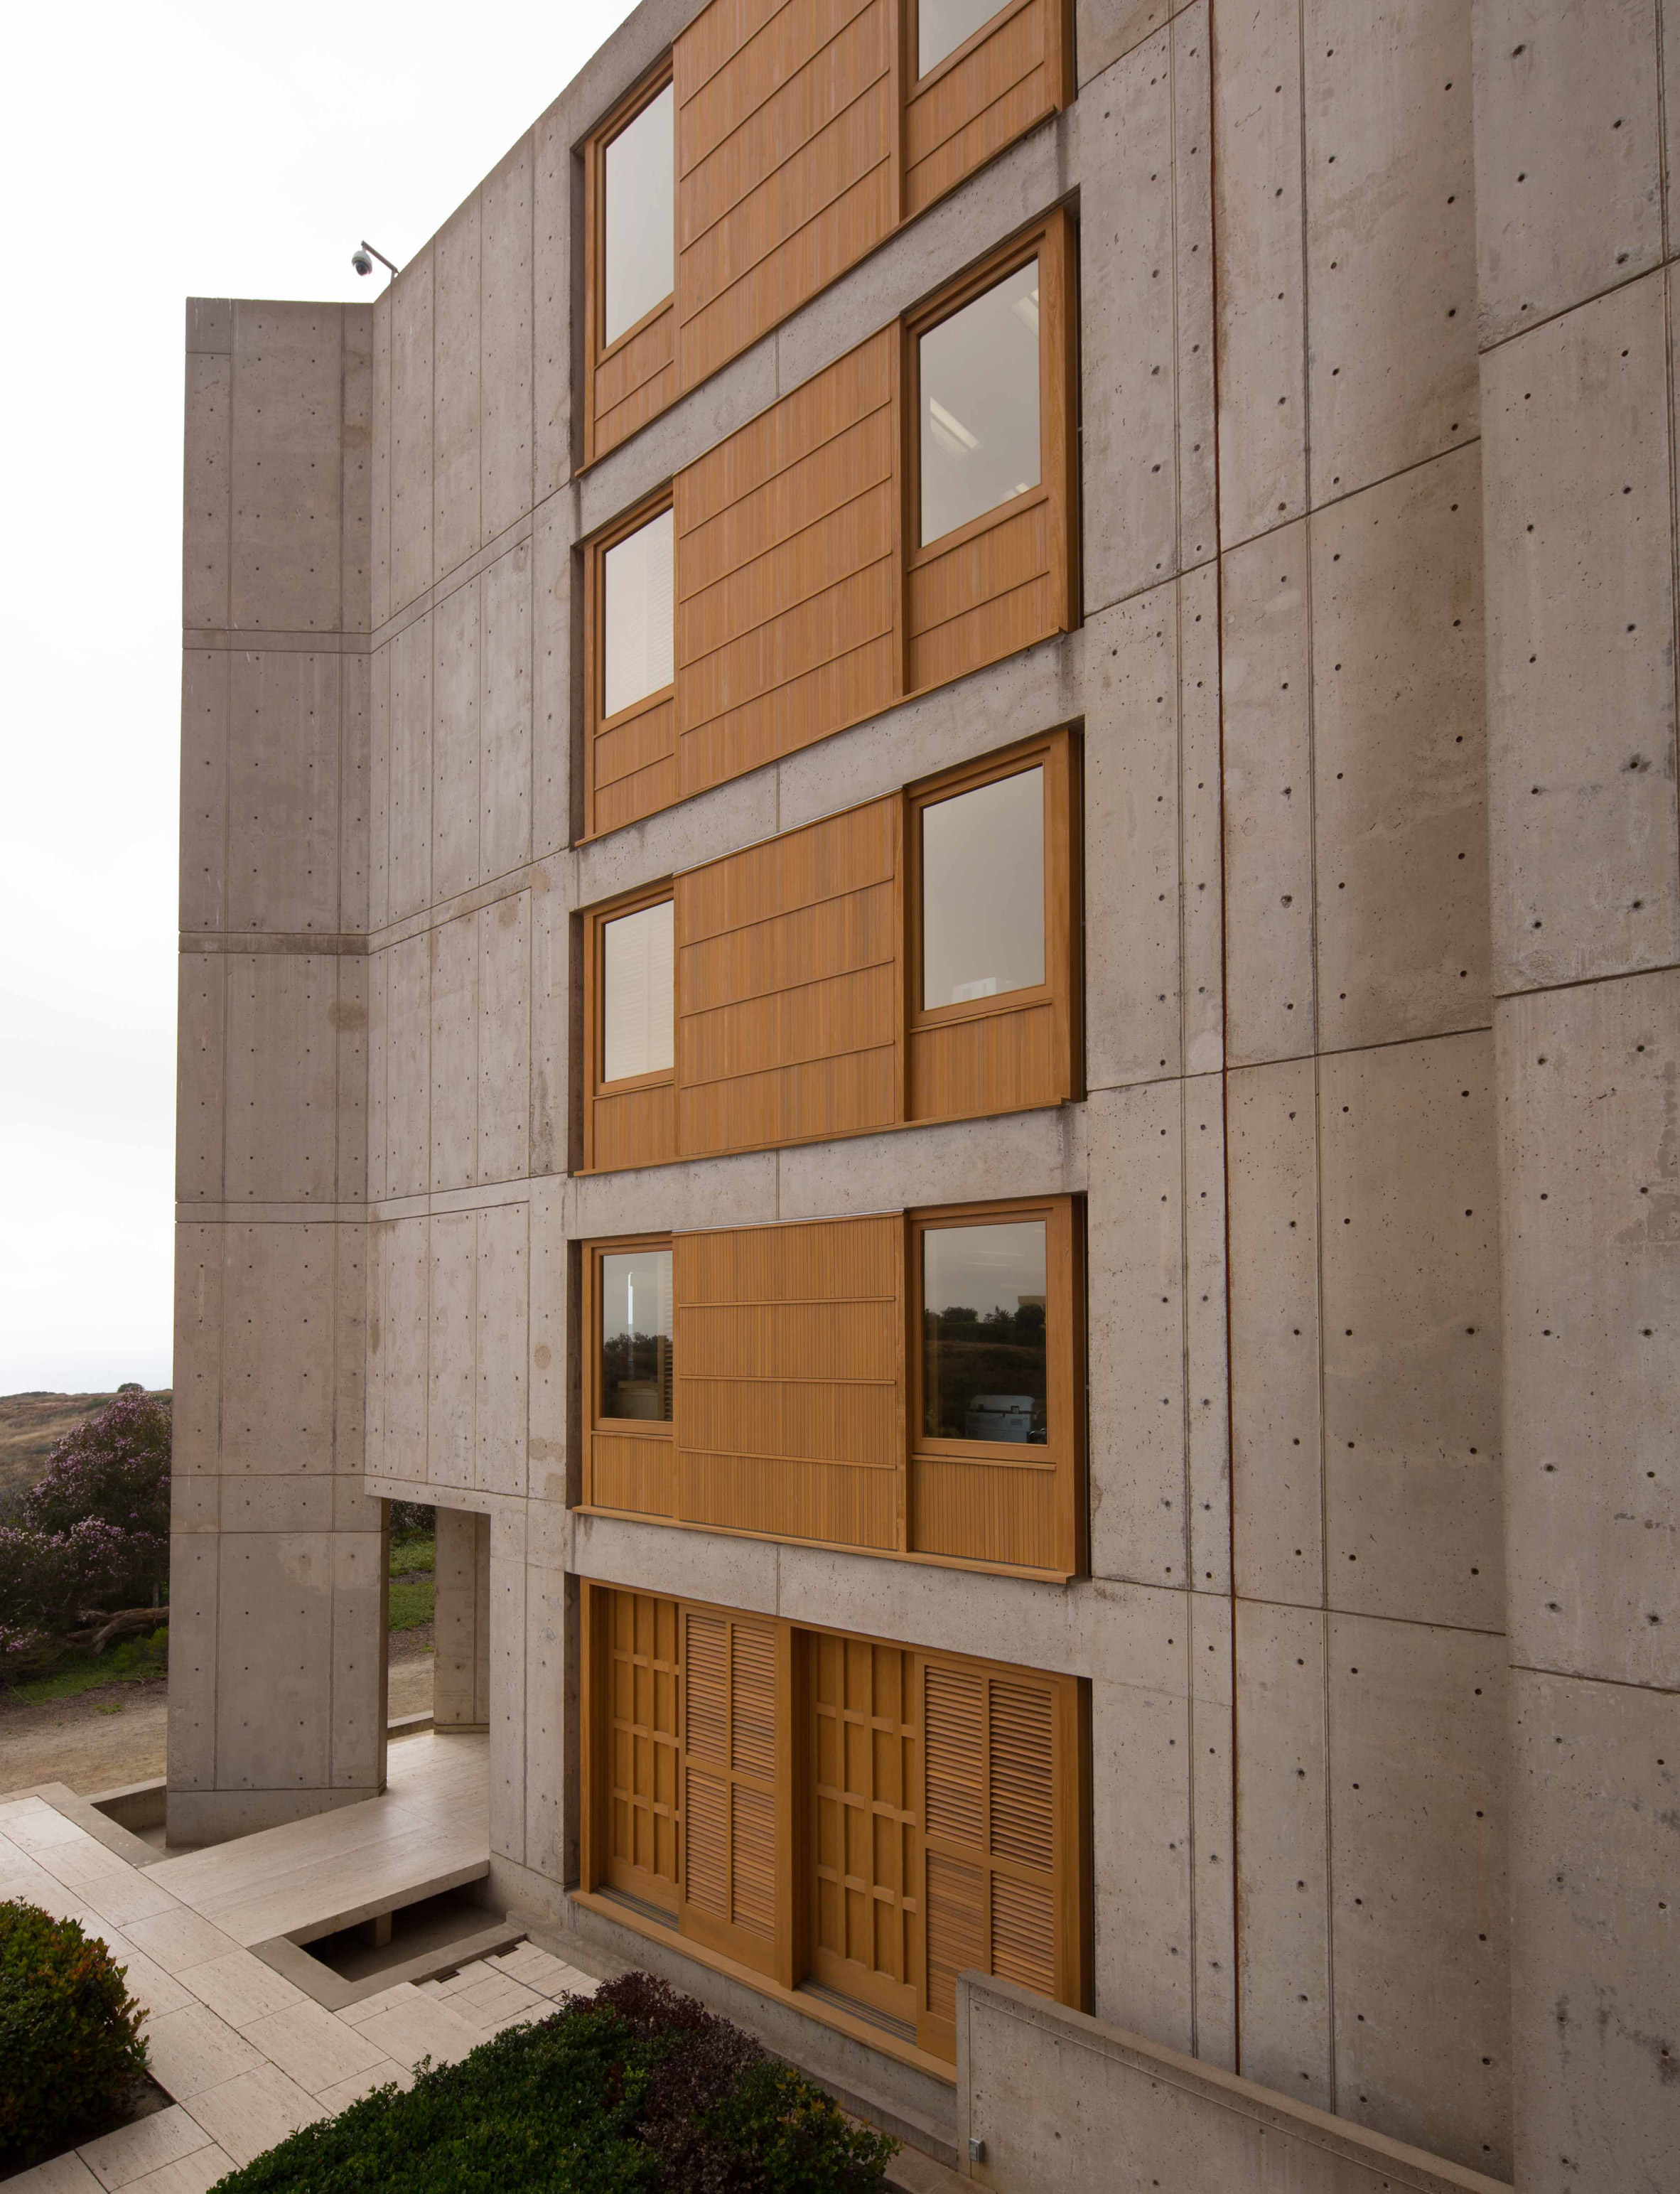 Salk Institute - A Louis Kahn Masterpiece - archEstudy